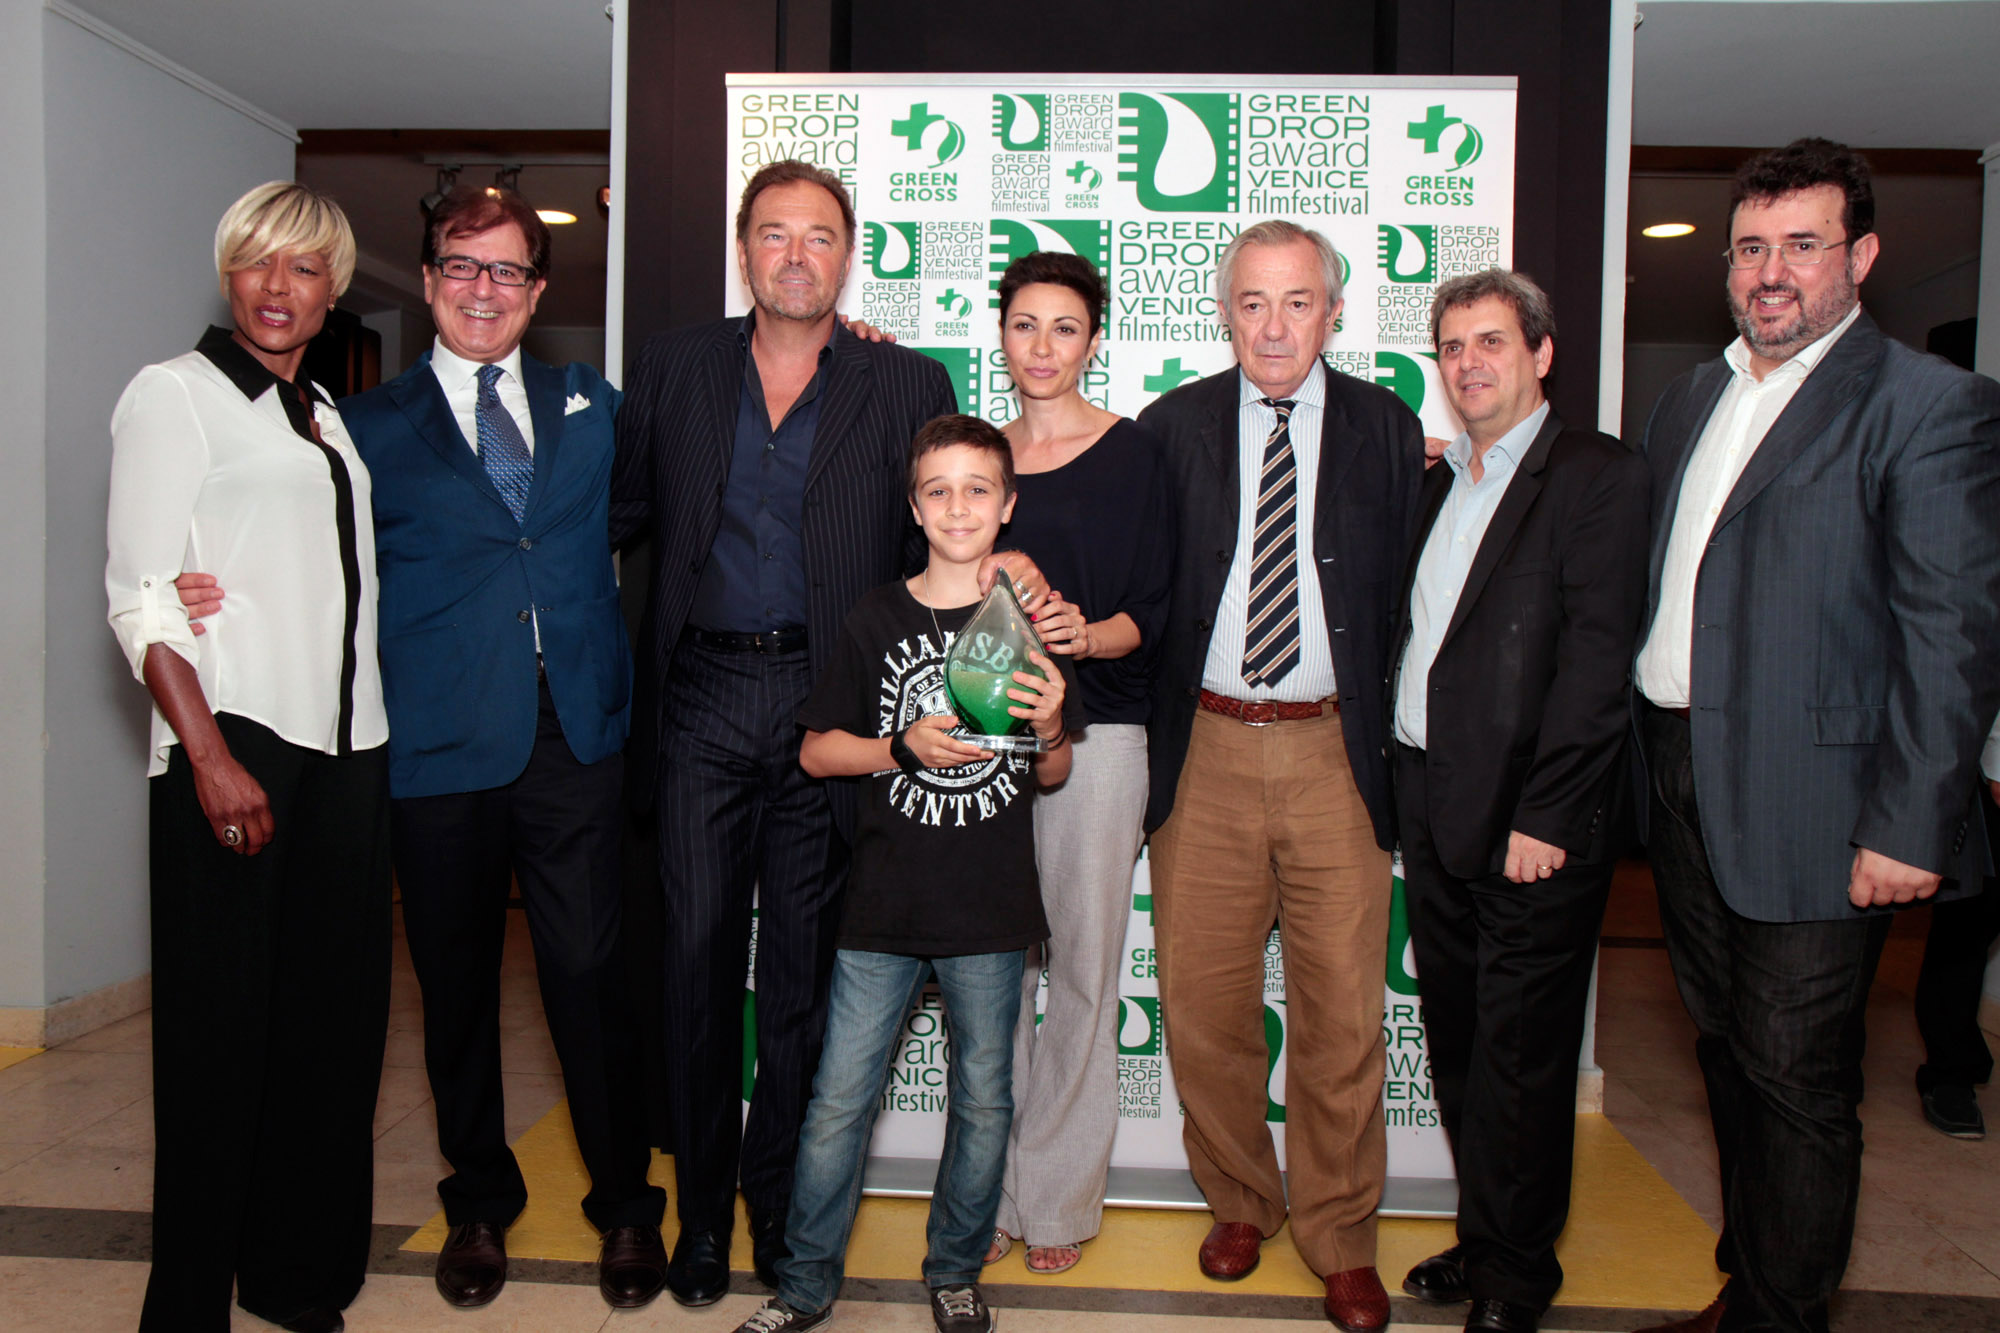 Il Green Carpet alla Casa del Cinema di Roma con il Green Drop Award